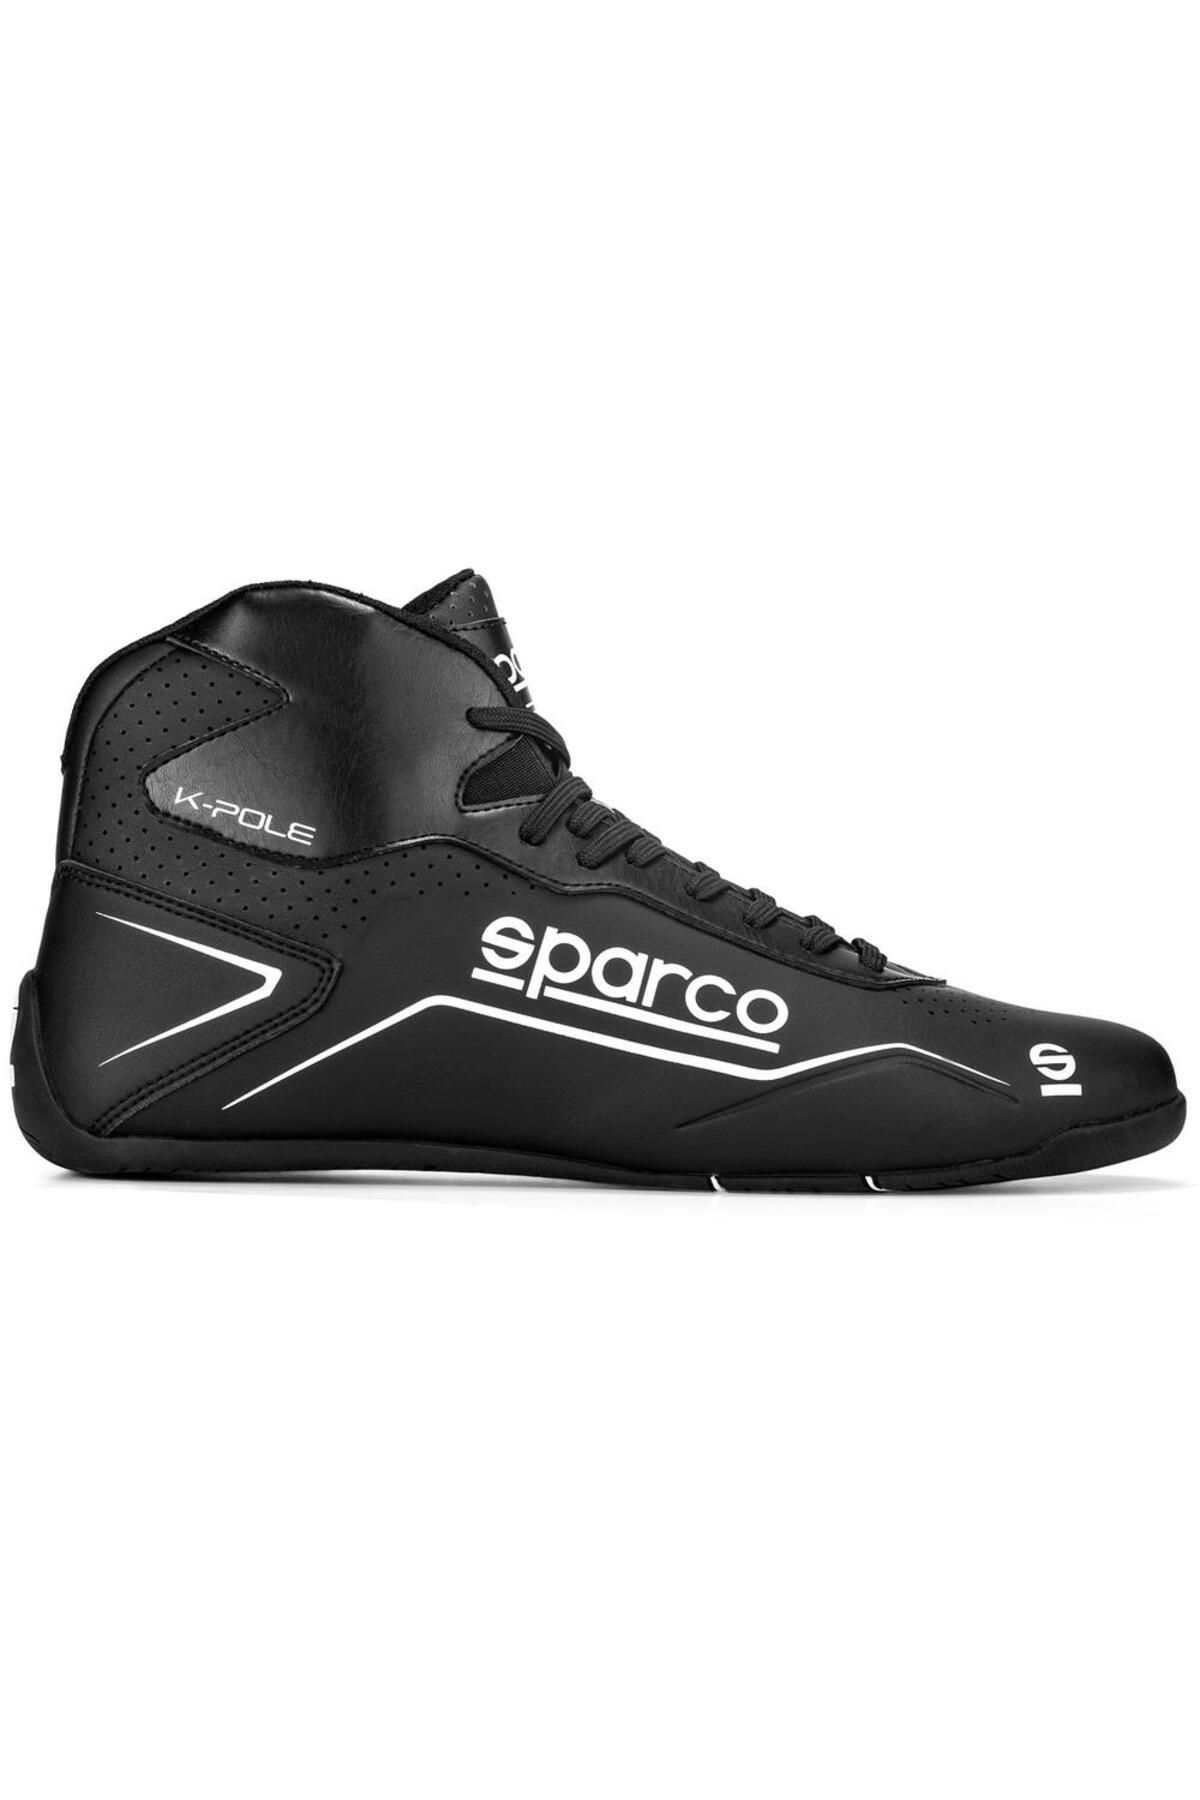 Sparco K-pole Karting Ayakkabısı Siyah 36 Numara